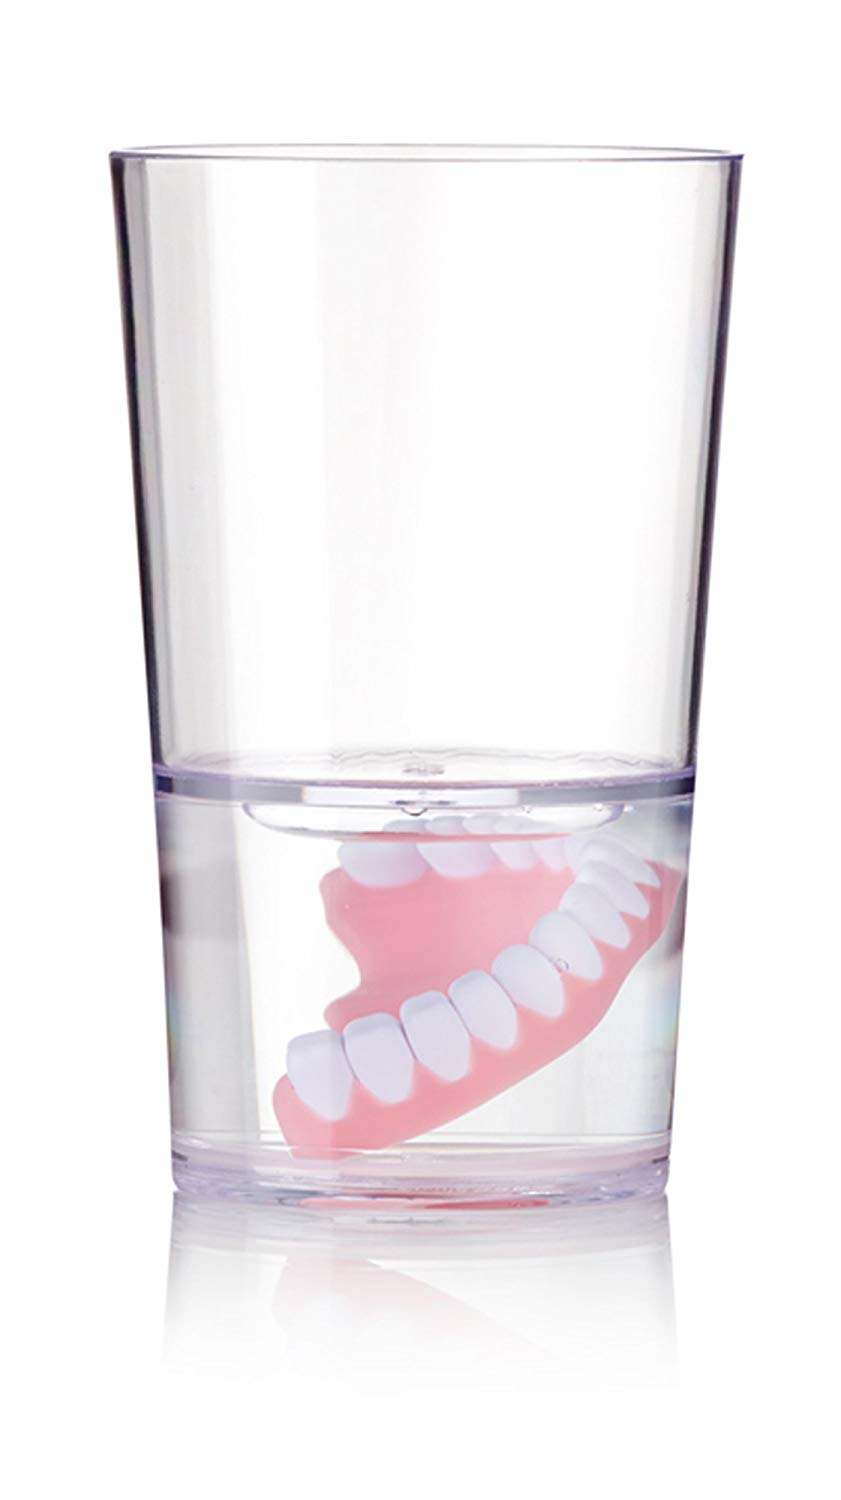 Dentures in Water Glass